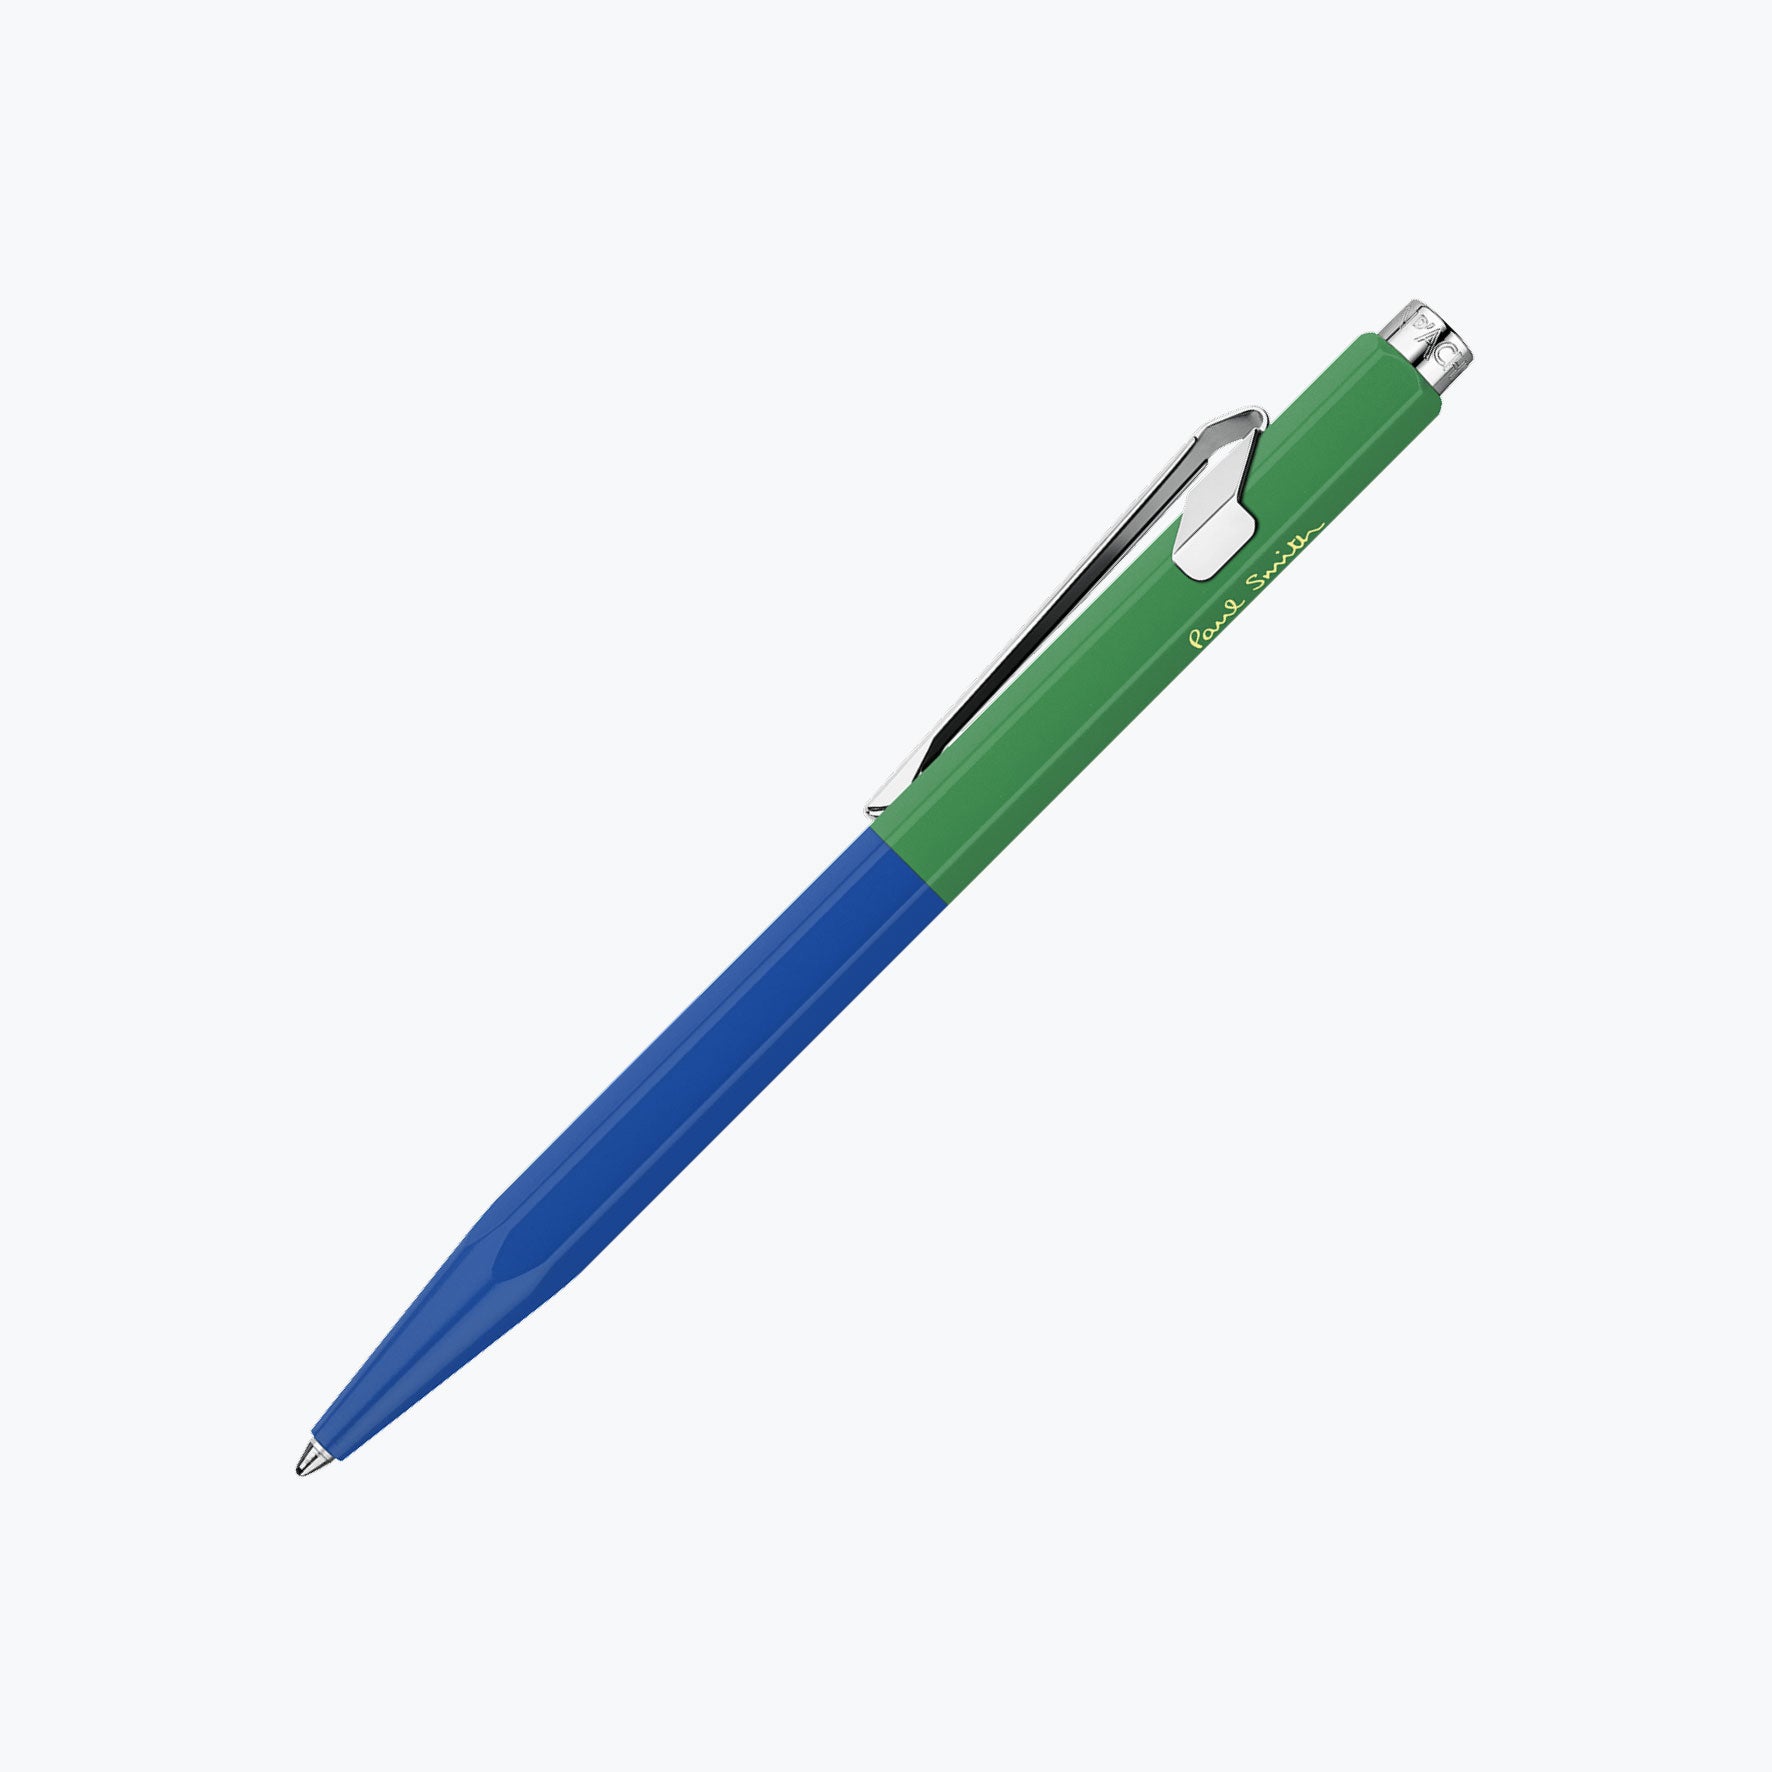 Caran d'Ache - Ballpoint Pen - 849 Paul Smith 4 - Cobalt Blue & Emerald Green